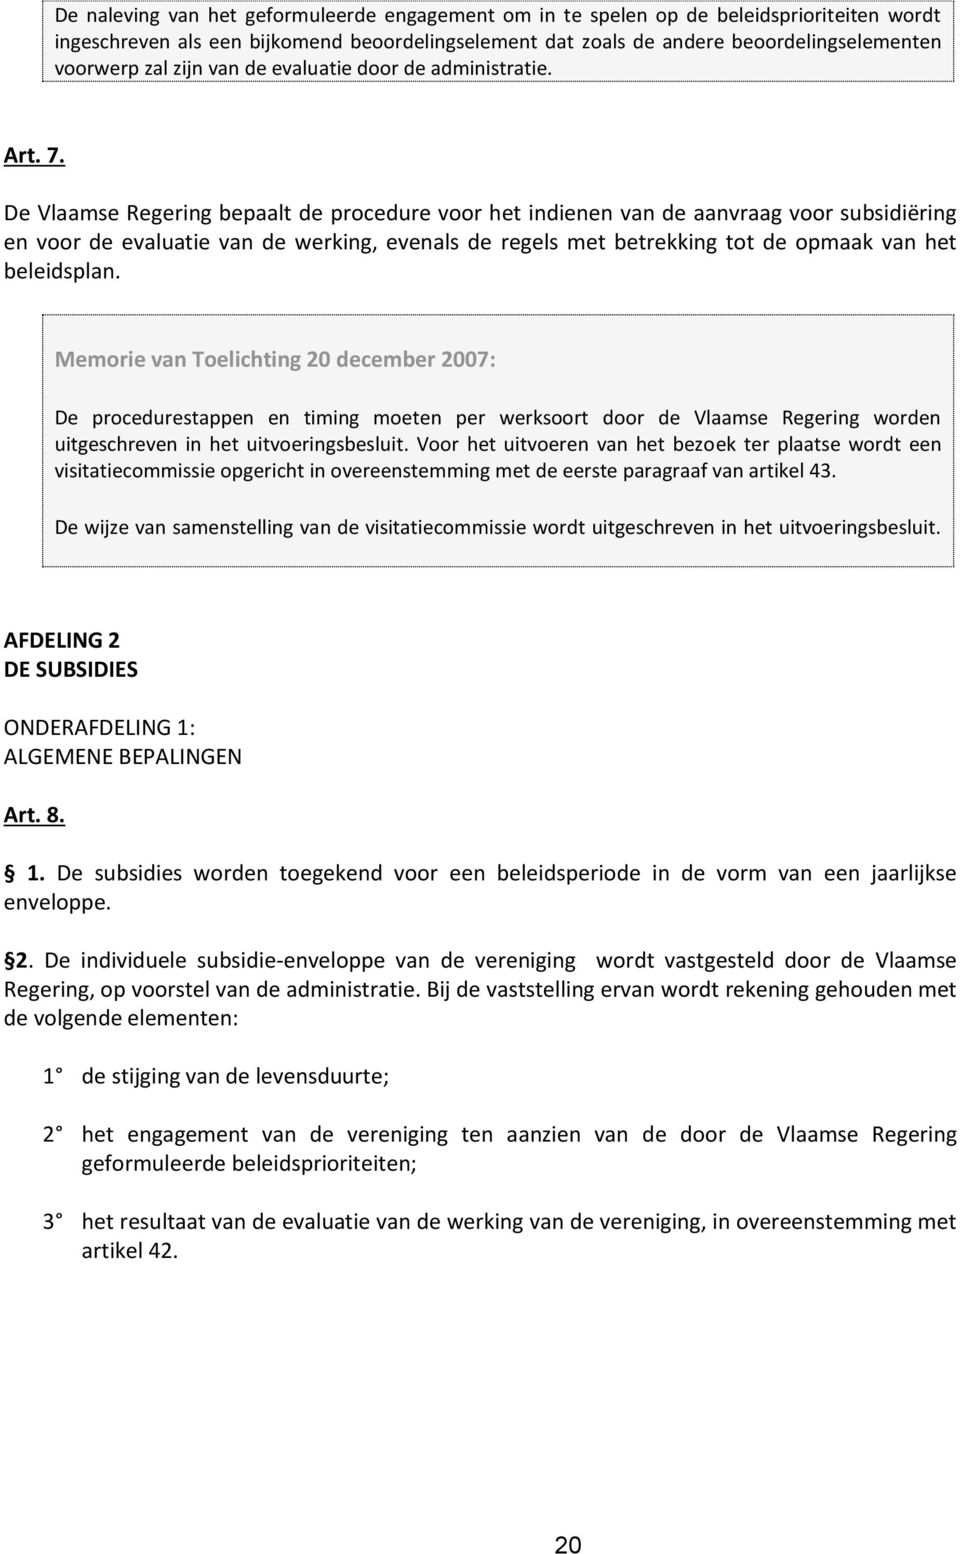 De Vlaamse Regering bepaalt de procedure voor het indienen van de aanvraag voor subsidiëring en voor de evaluatie van de werking, evenals de regels met betrekking tot de opmaak van het beleidsplan.